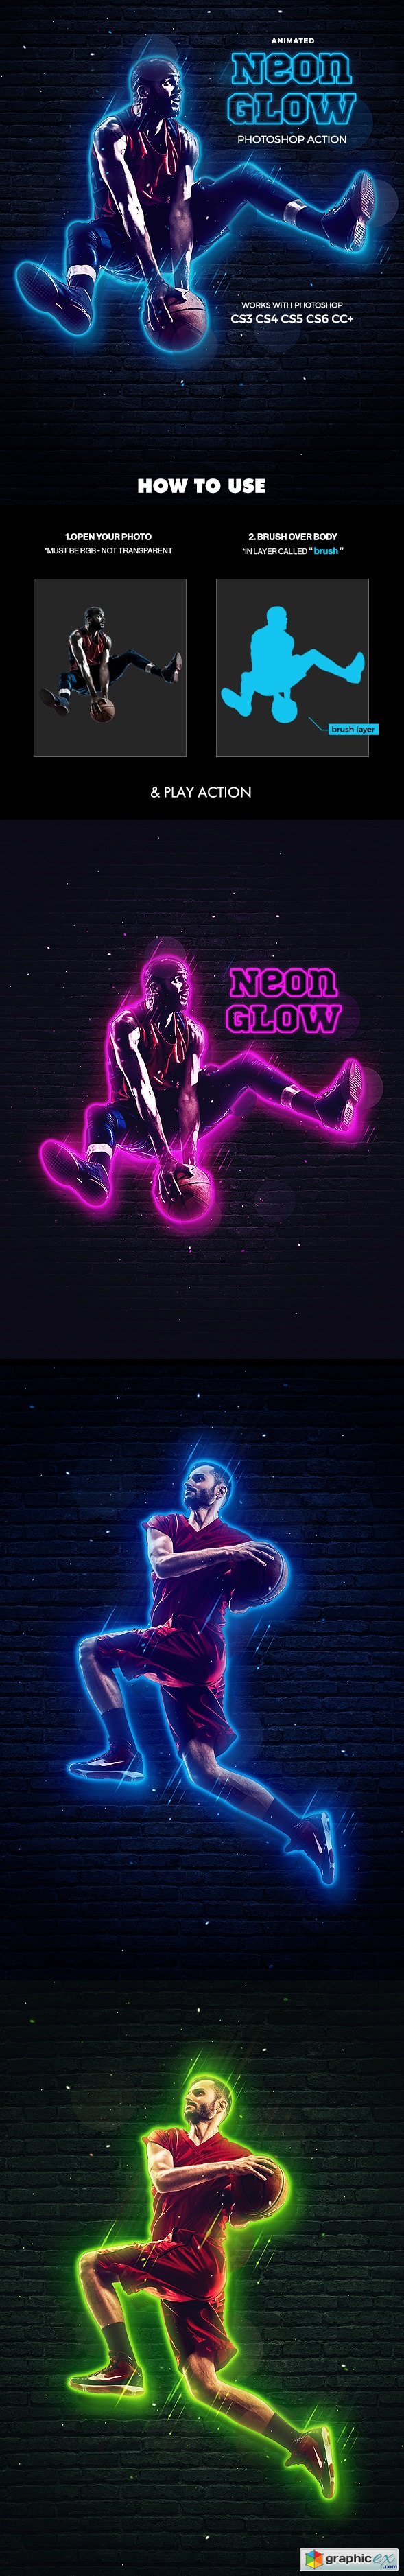 Neon Glow Photoshop Action - Animated